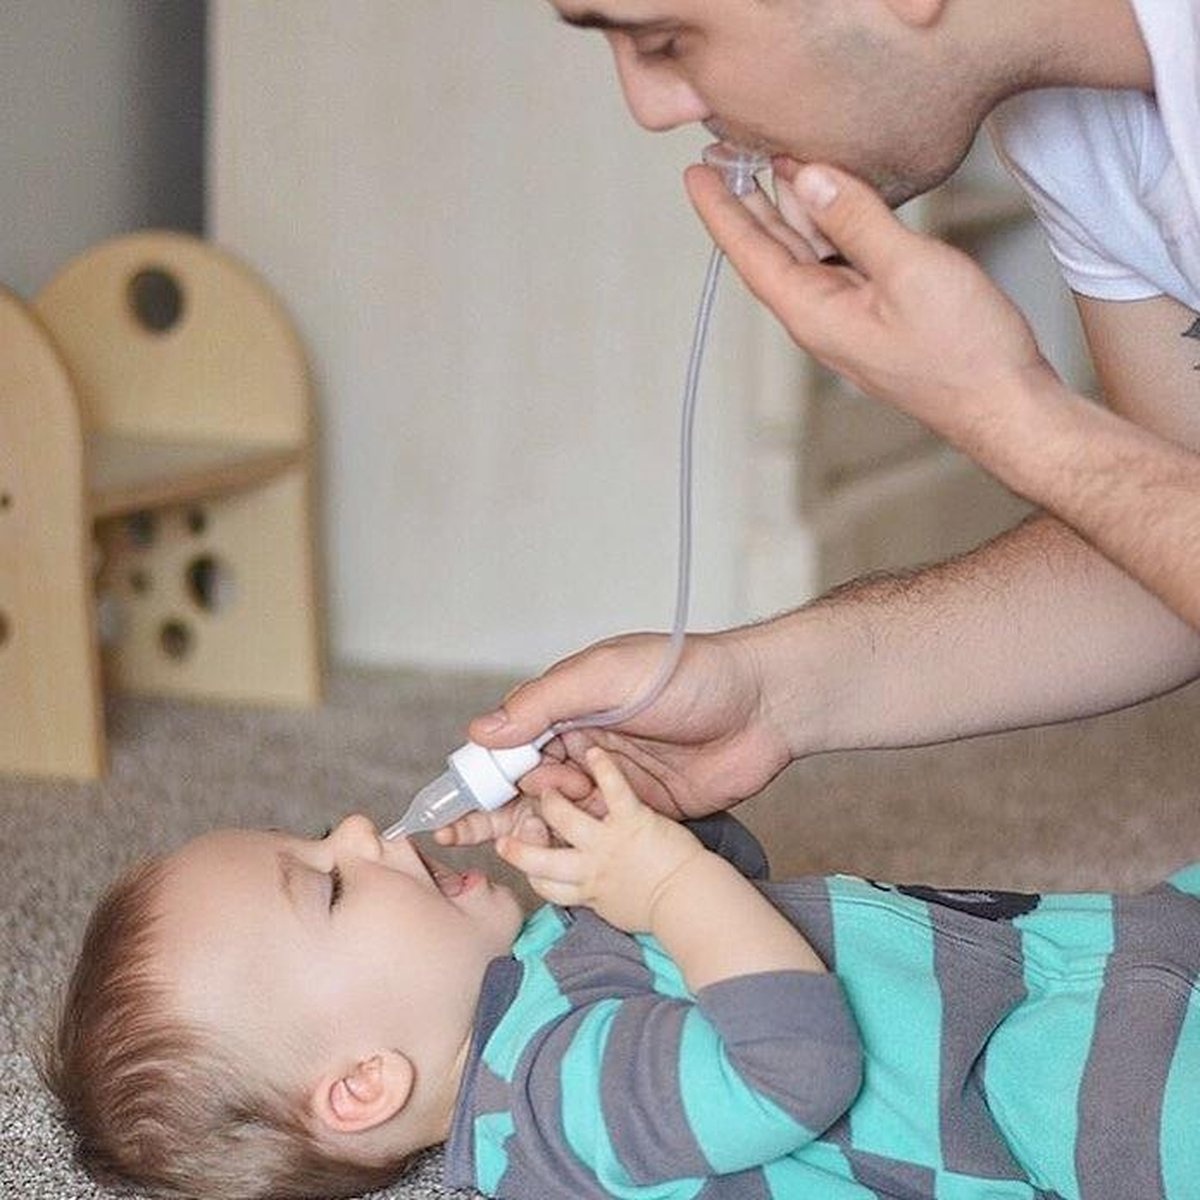 Nasensauger für Babys – Nûby – Verpackung beschädigt